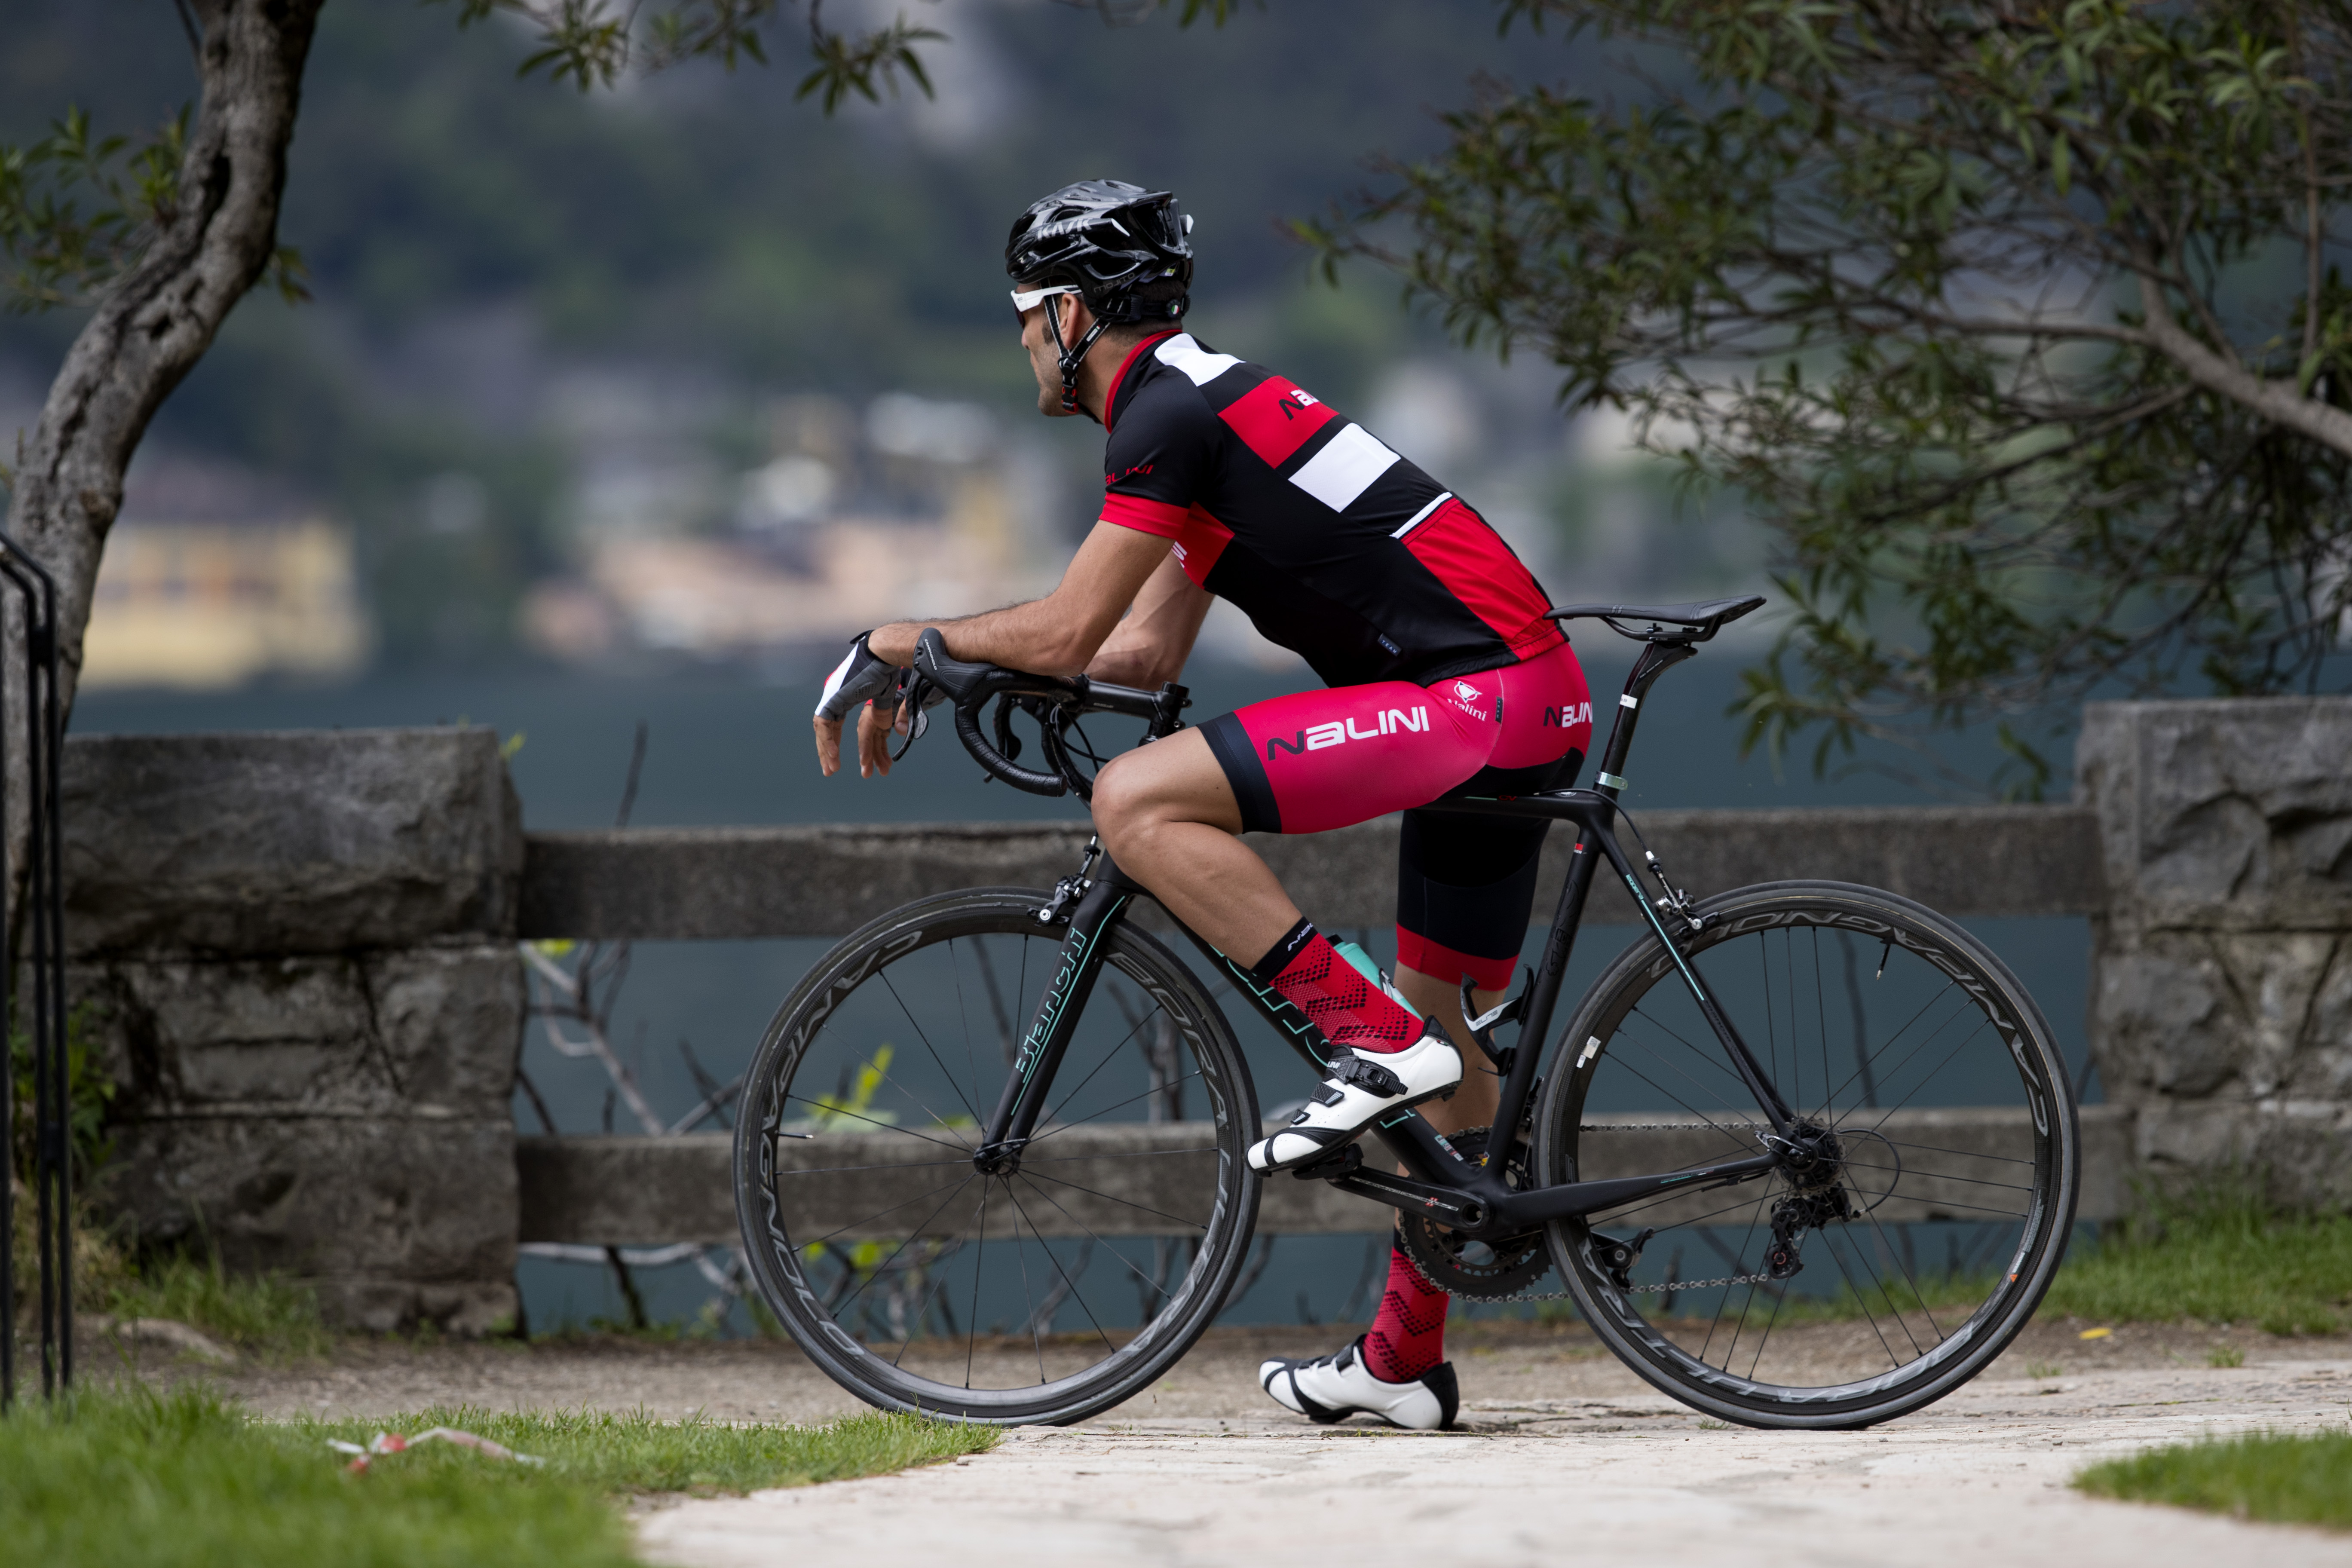 Nalini Cuissard à Bretelles Court Cycliste Homme - New Color - noir/rouge  4100